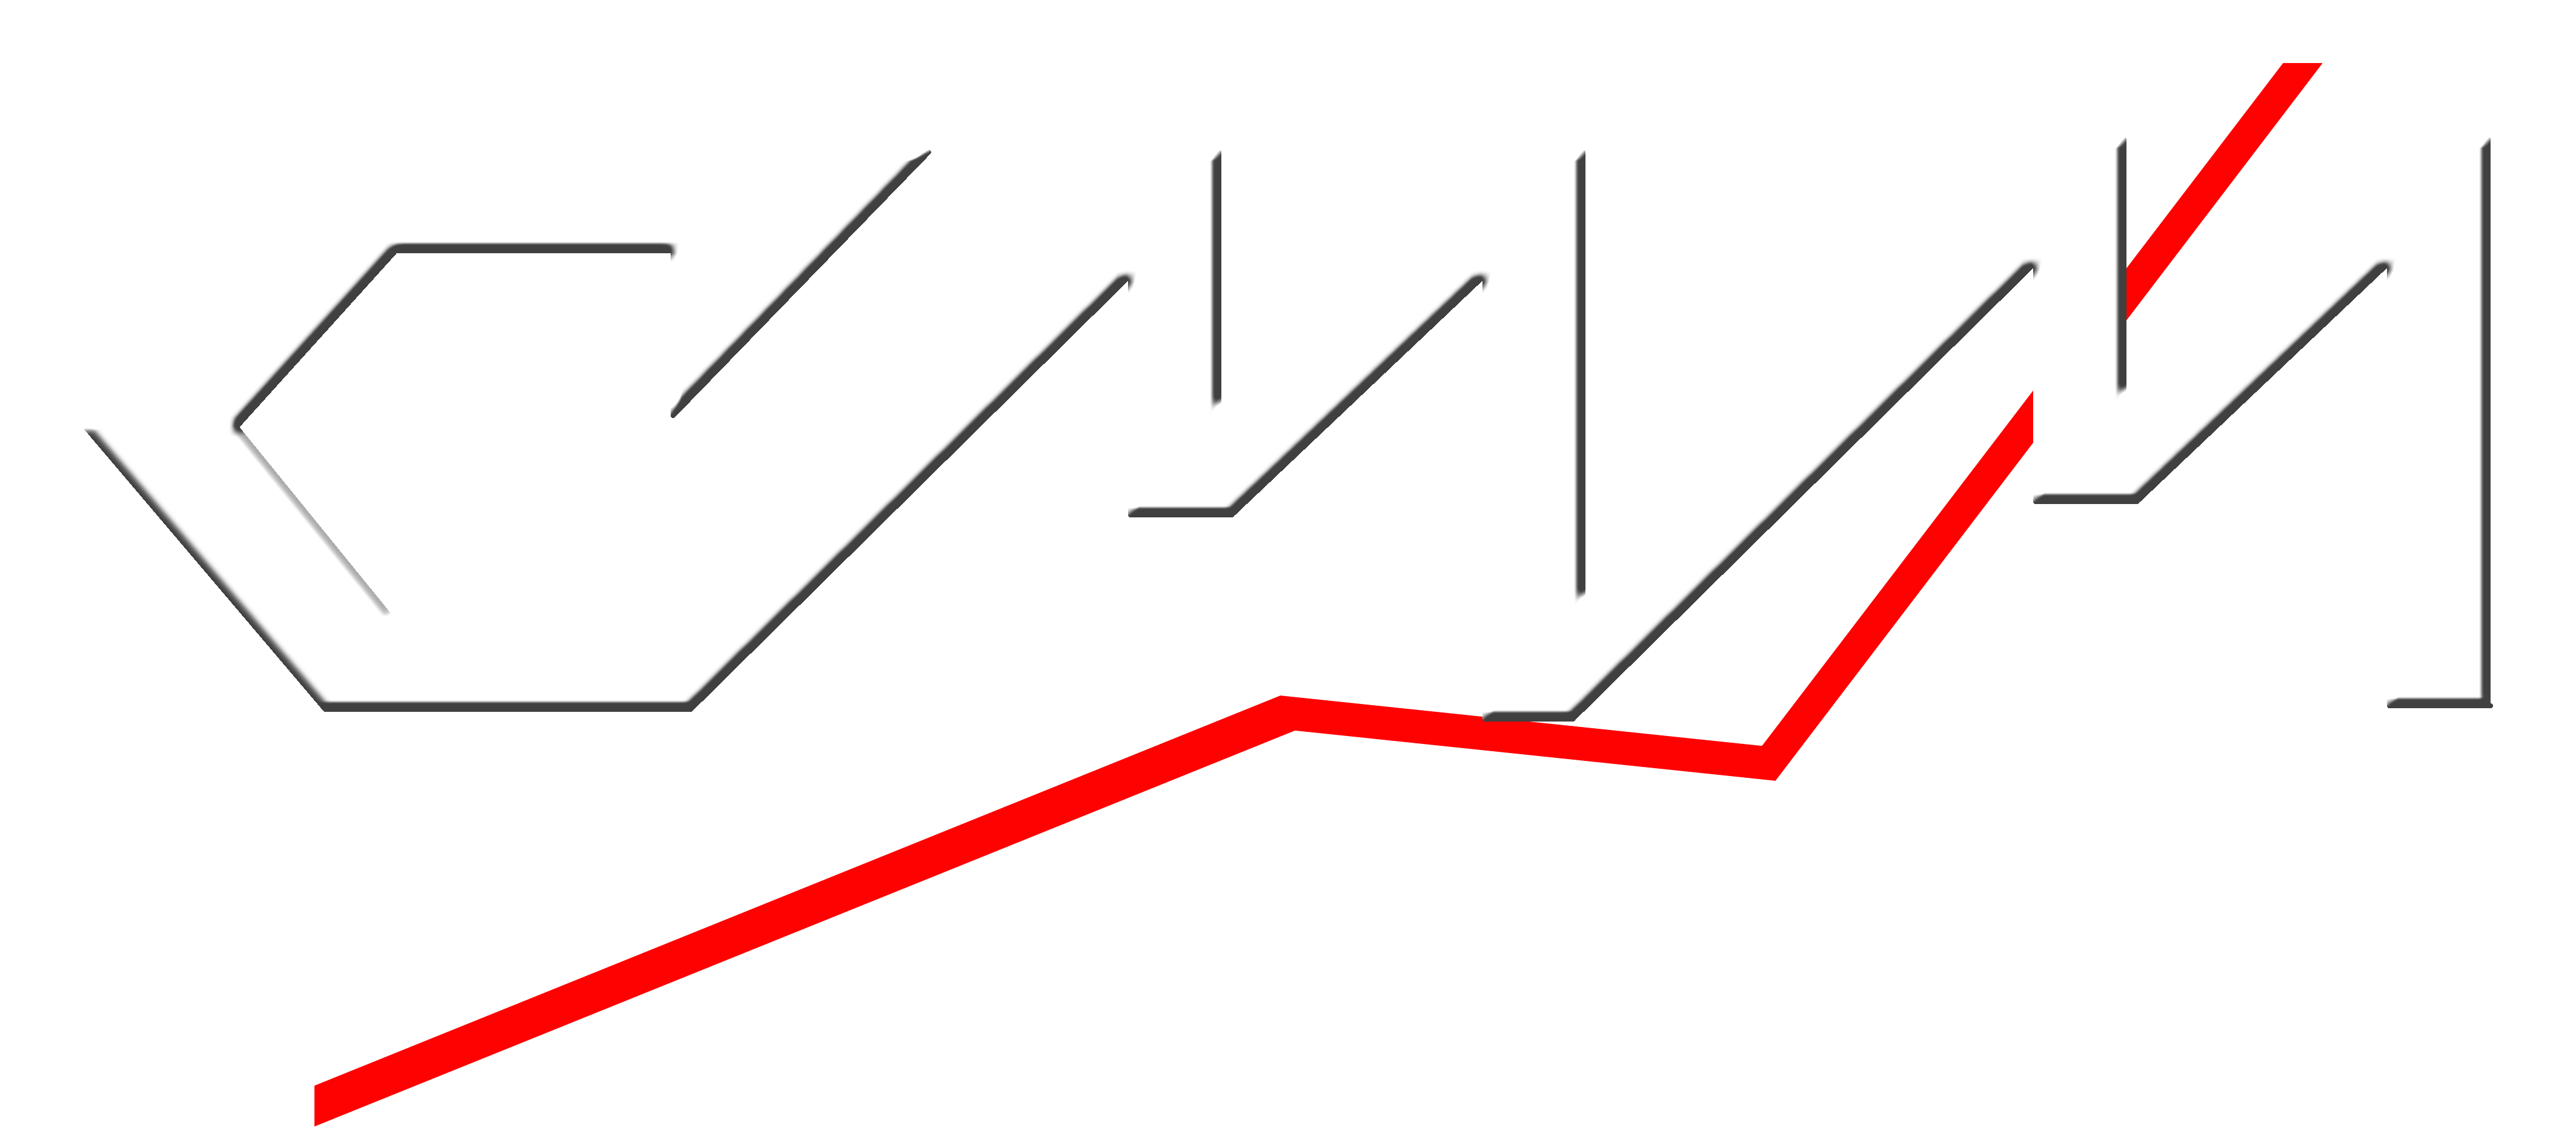 Logo CMM Strutture